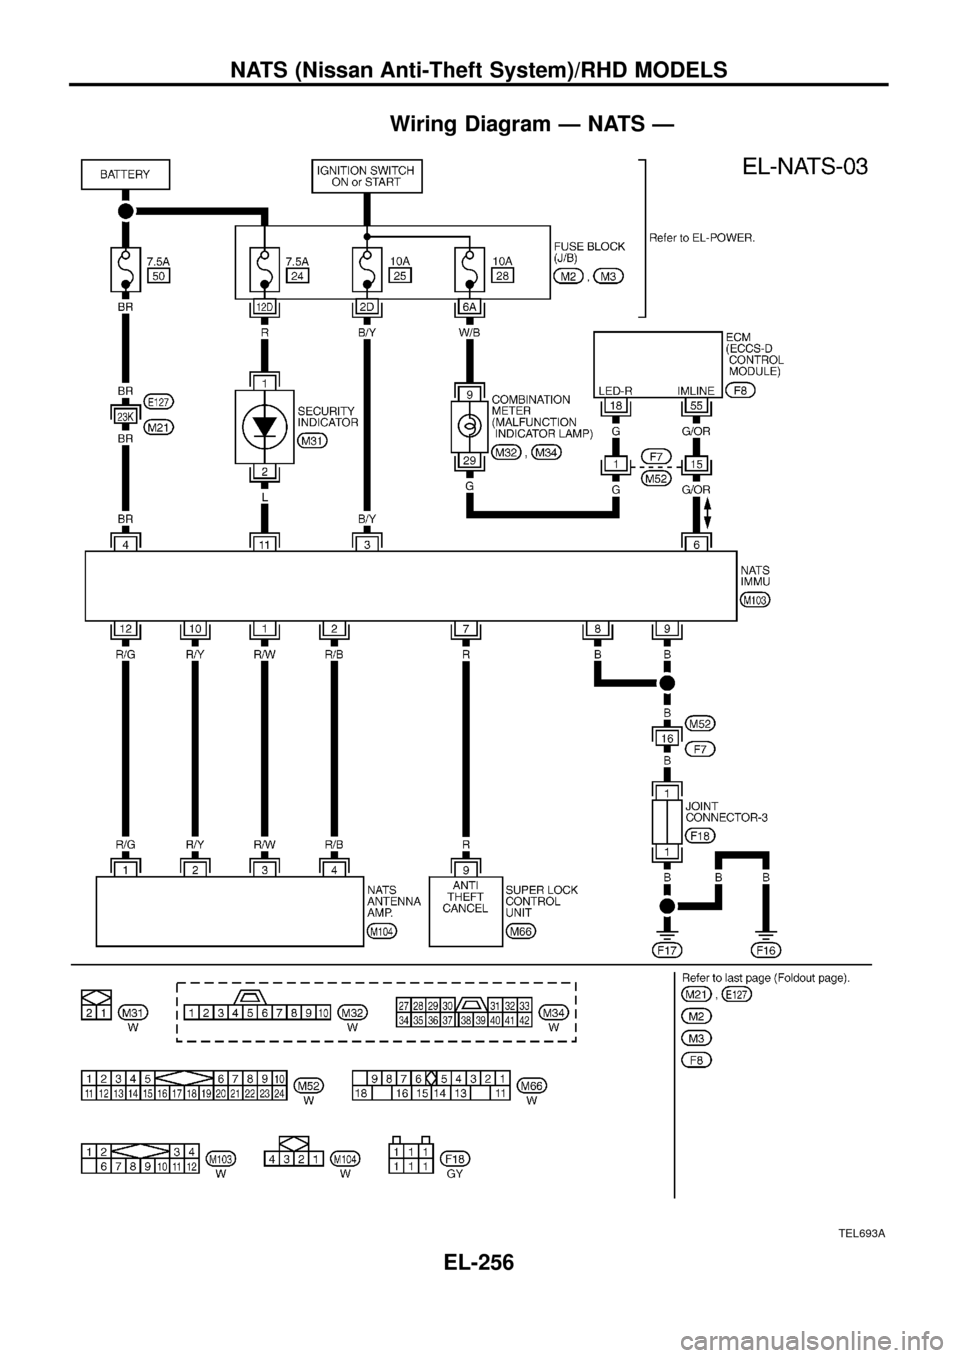 NISSAN PATROL 1998 Y61 / 5.G Electrical System Workshop Manual Wiring Diagram Ð NATS Ð
TEL693A
NATS (Nissan Anti-Theft System)/RHD MODELS
EL-256 